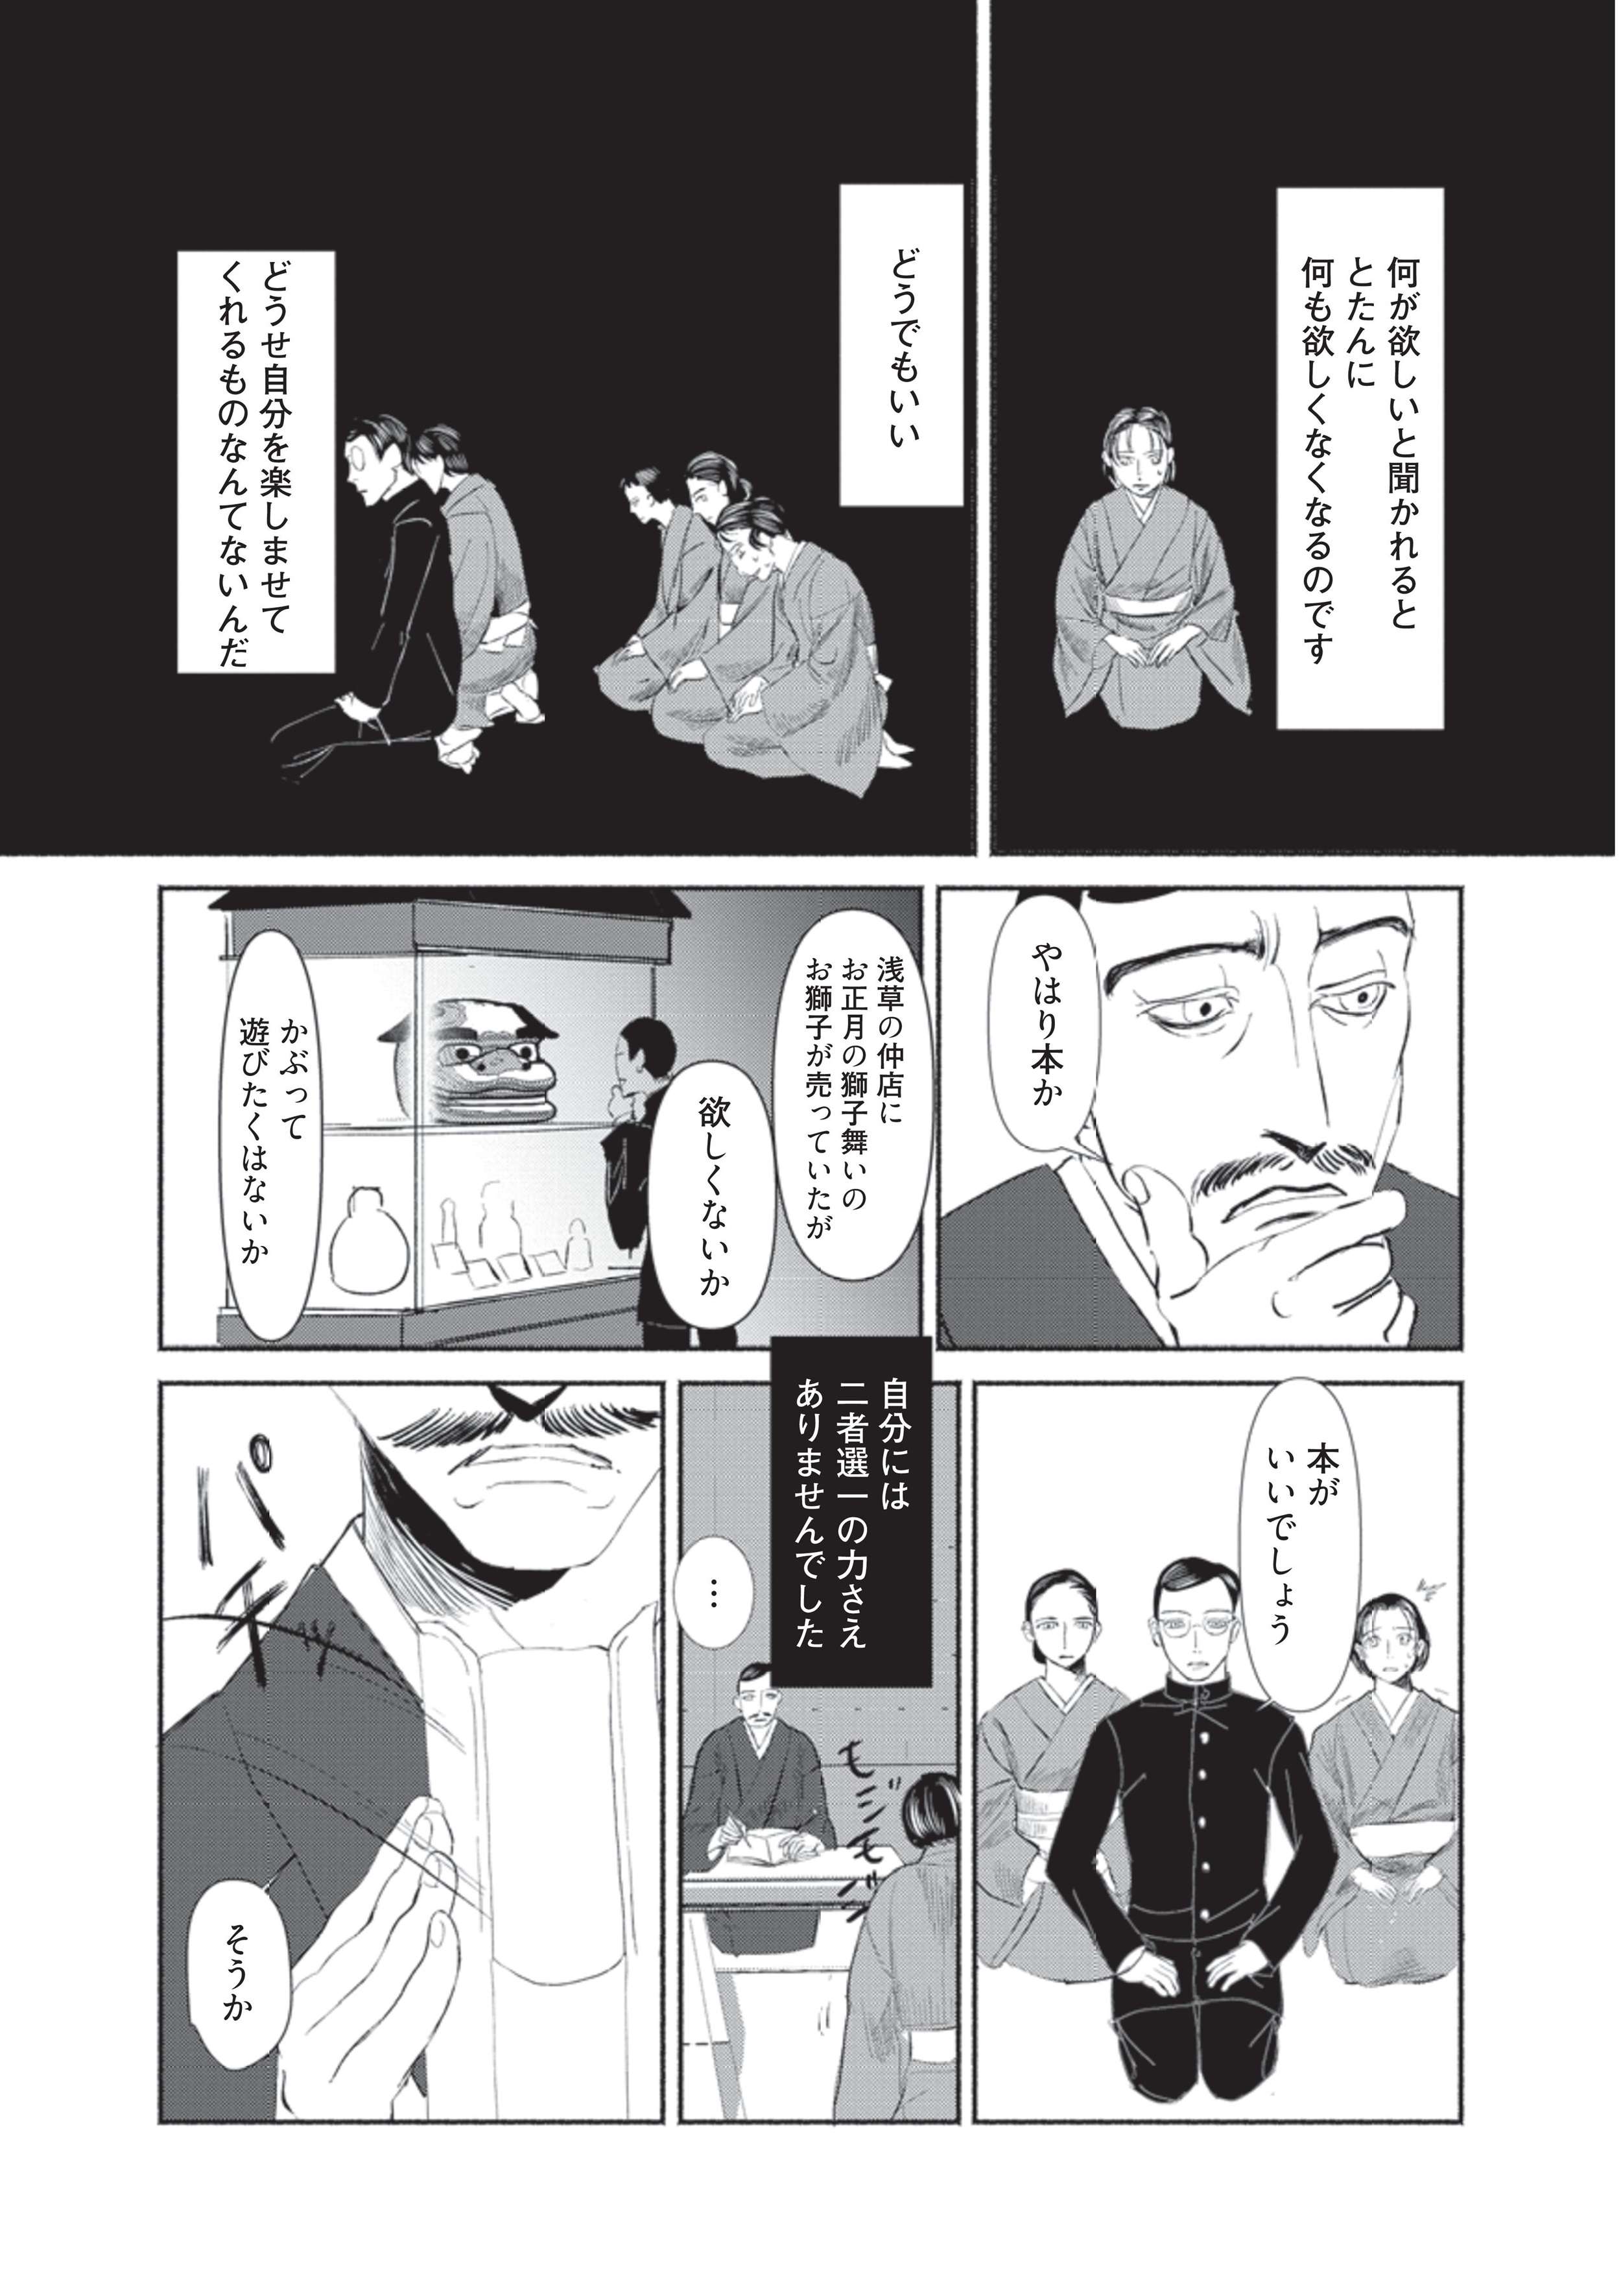 ほしいものを答えられない... 家族からも理解されずに少年は恐怖する／漫画 人間失格 manga_ningenshikkaku3-2.jpg